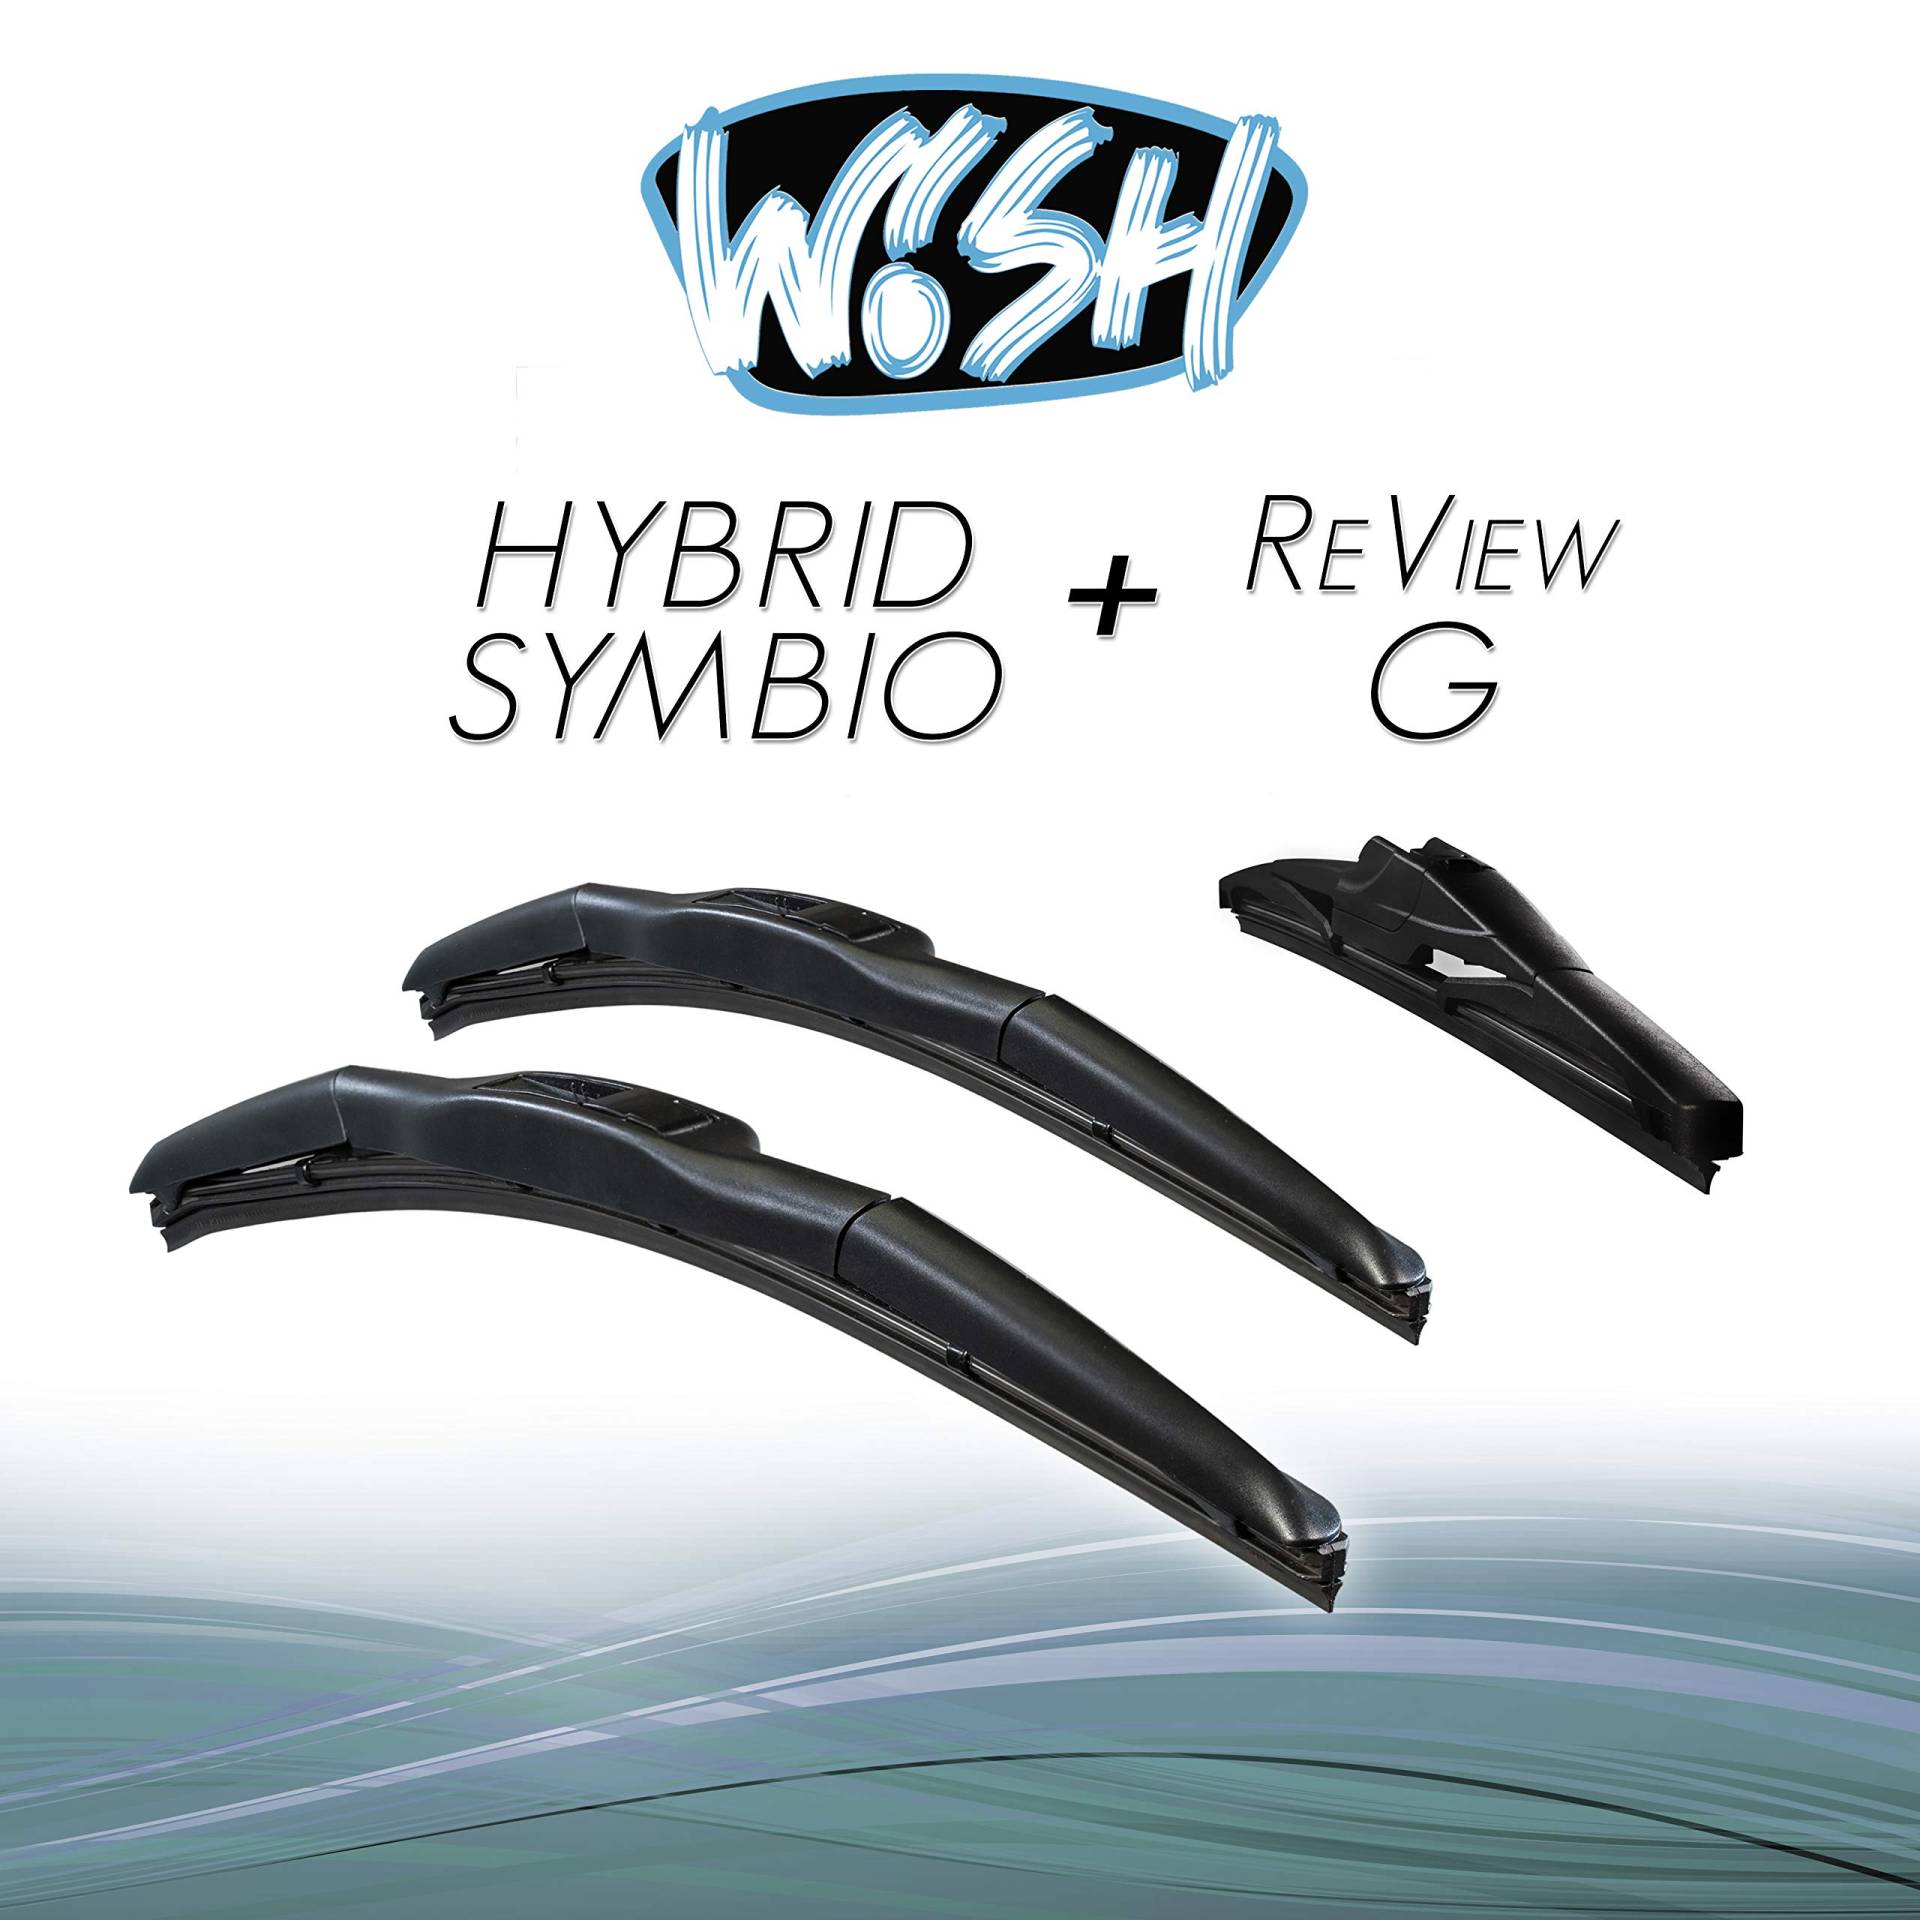 Wish® Hybrid Symbio Satz Front + Heck Scheibenwischer Länge: 21" 530mm / 12" 300mm / 12" 300mm Wischblätter Vorne und Hinten Hybrid-Scheibenwischer + Review G HS21.12.12RG von Wish